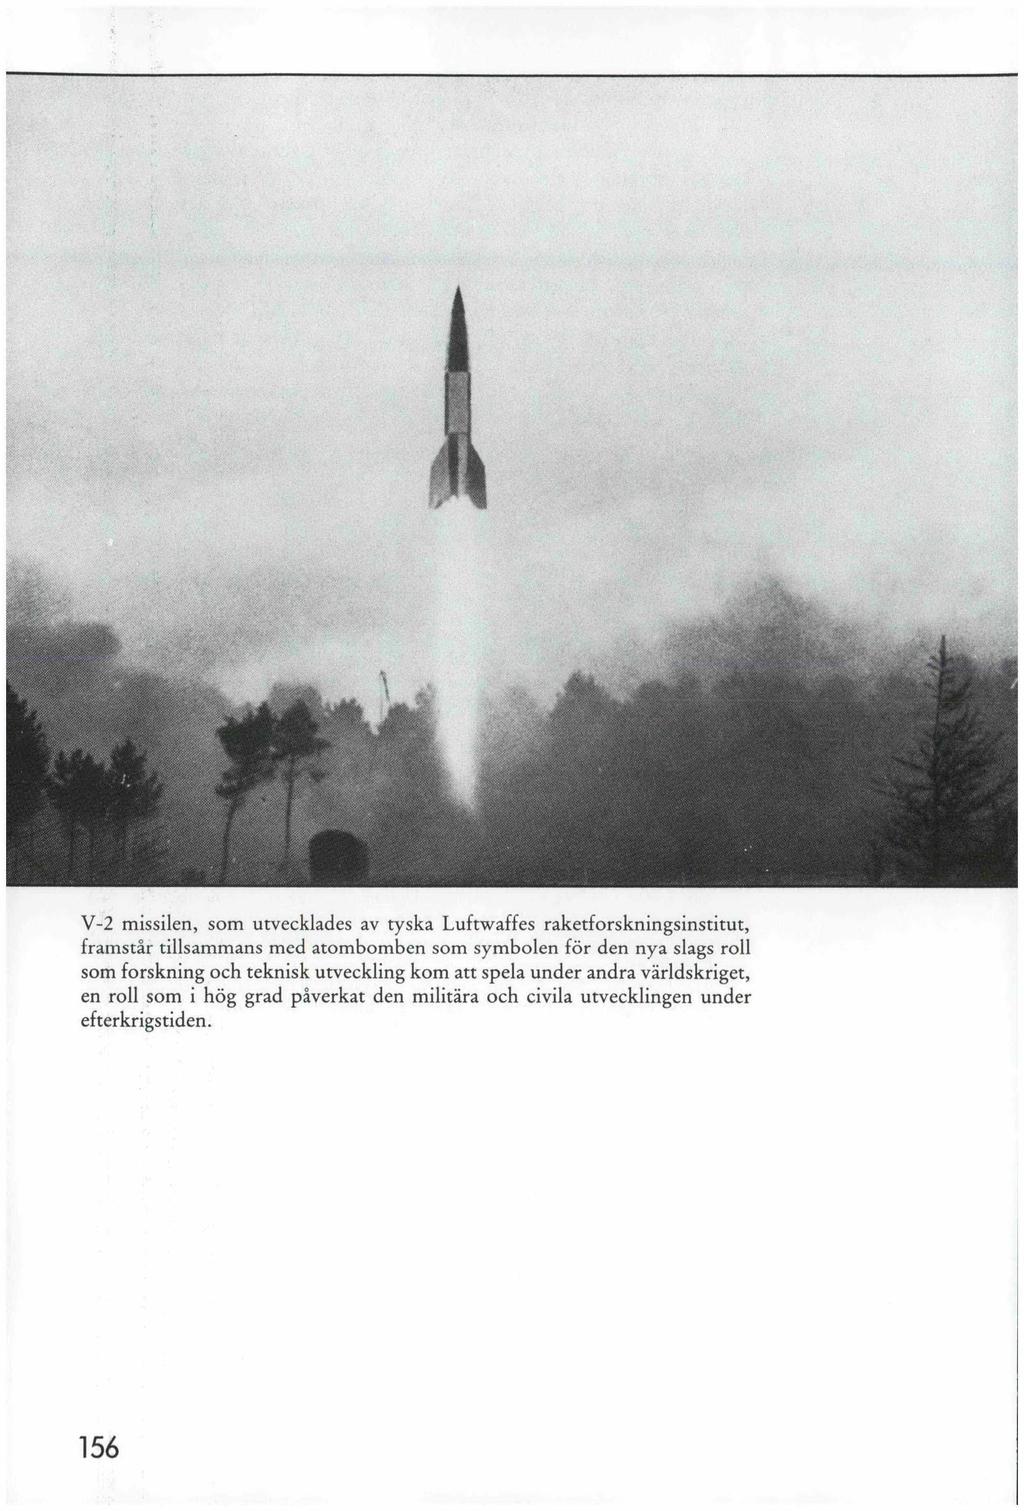 V-2 missilen, som utvecklades av tyska Luftwaffes raketforskningsinstitut, framstår tillsammans med atombomben som symbolen för den nya slags roll som